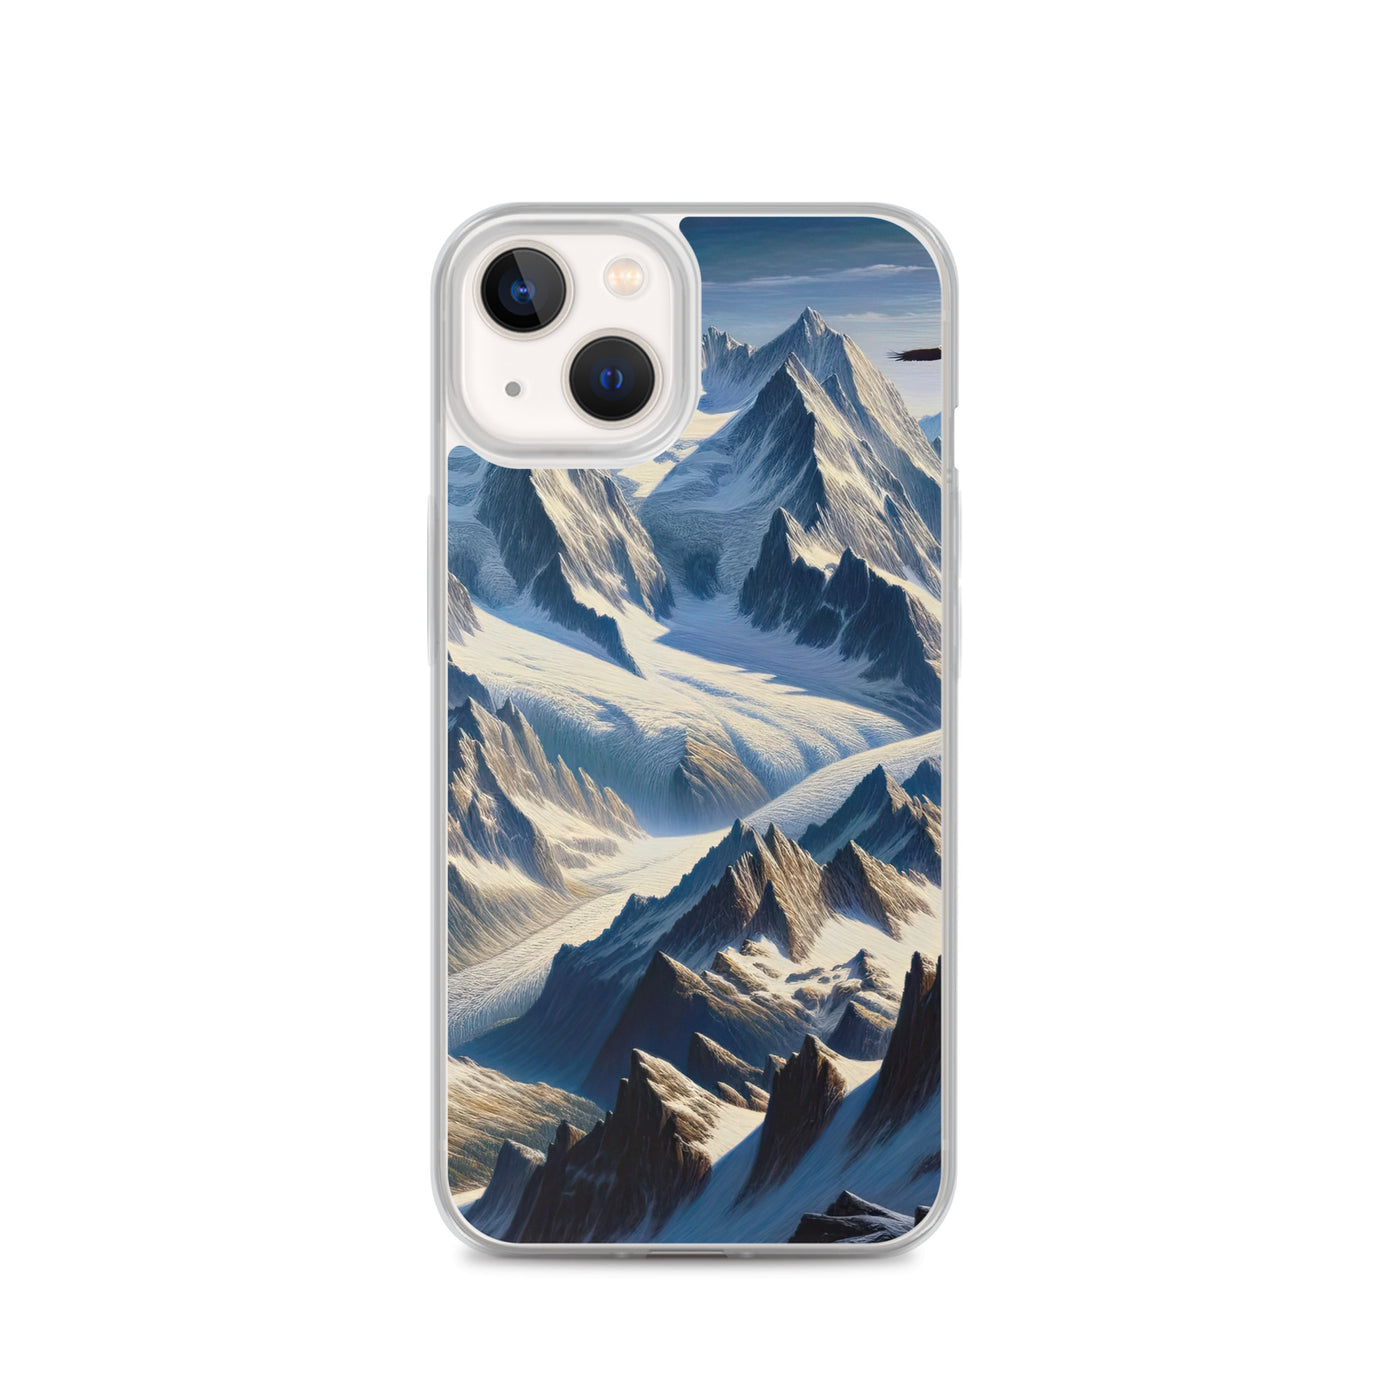 Ölgemälde der Alpen mit hervorgehobenen zerklüfteten Geländen im Licht und Schatten - iPhone Schutzhülle (durchsichtig) berge xxx yyy zzz iPhone 13